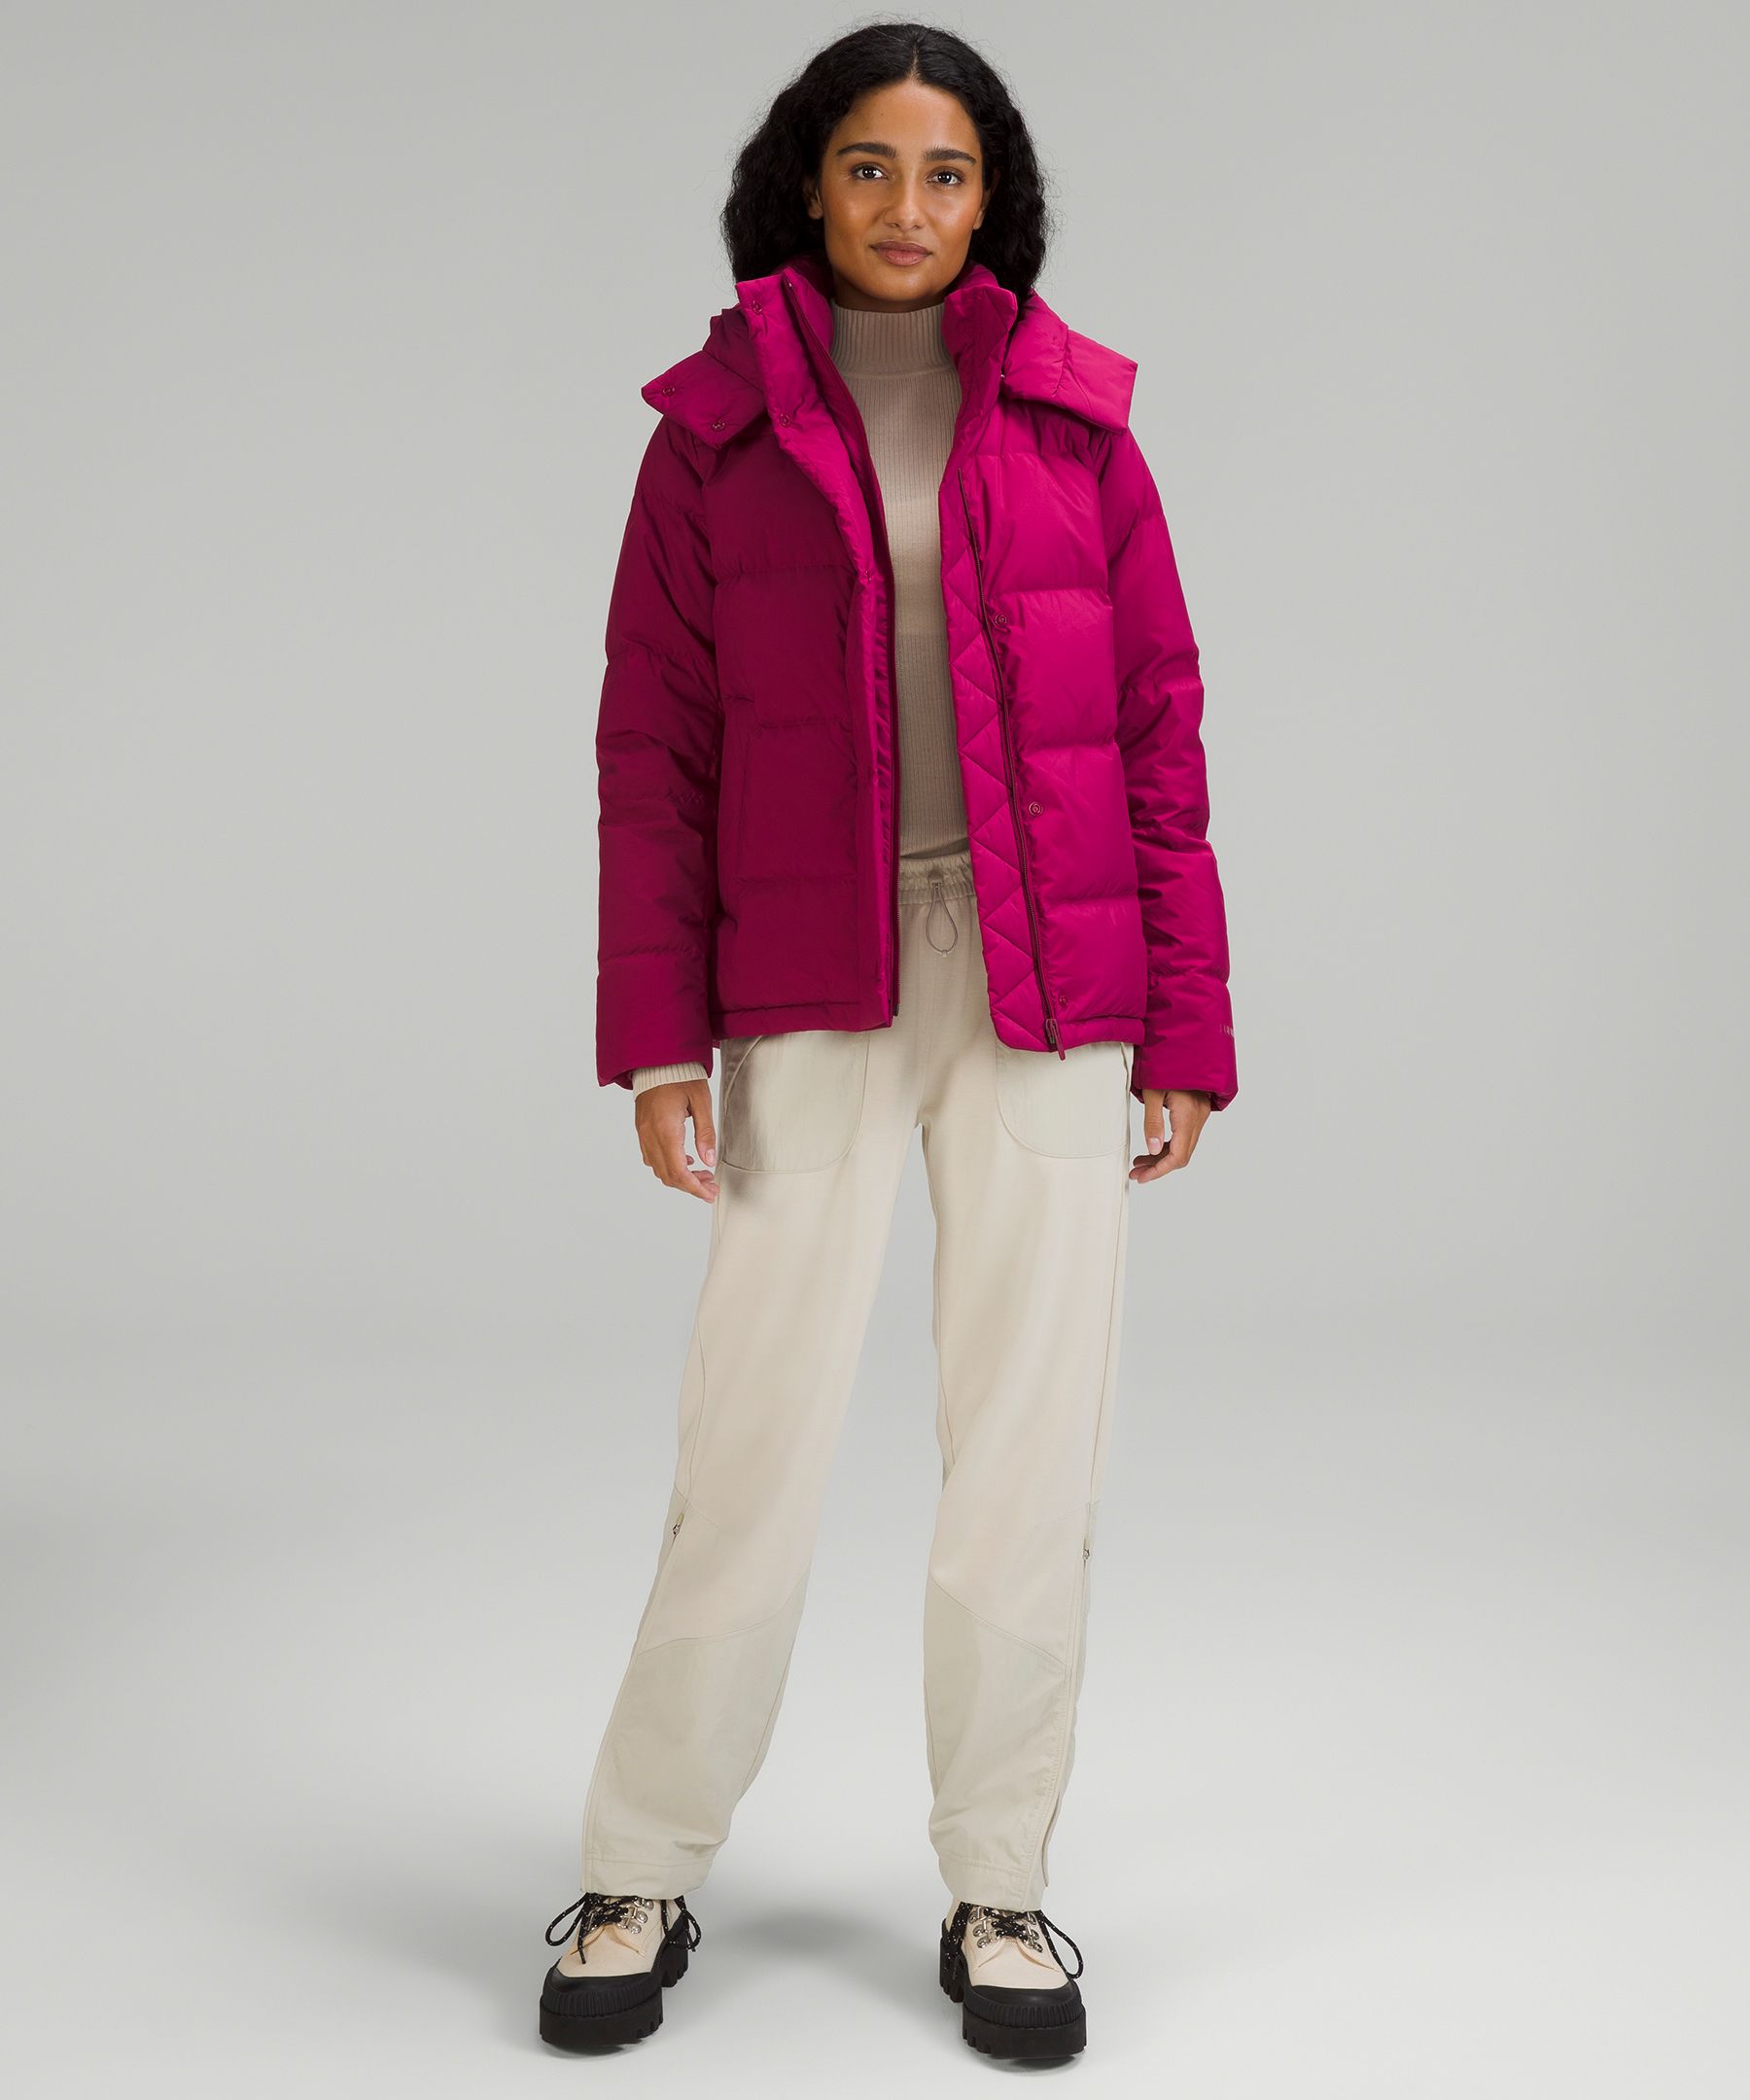 Wunder Puff Jacket | Women's Coats & Jackets | lululemon